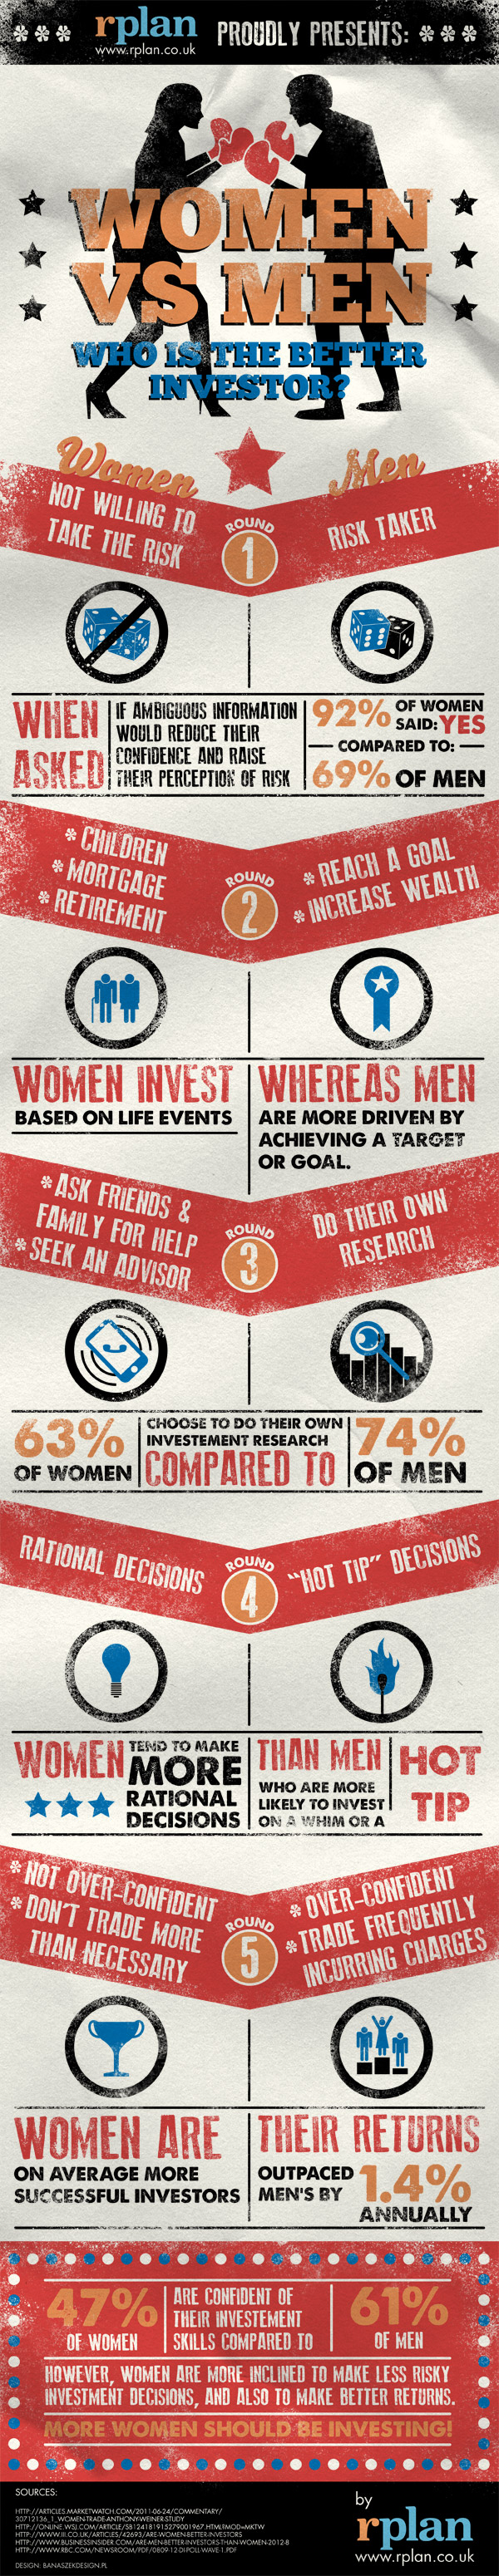 Women vs Men: Who’s the Better Investor?